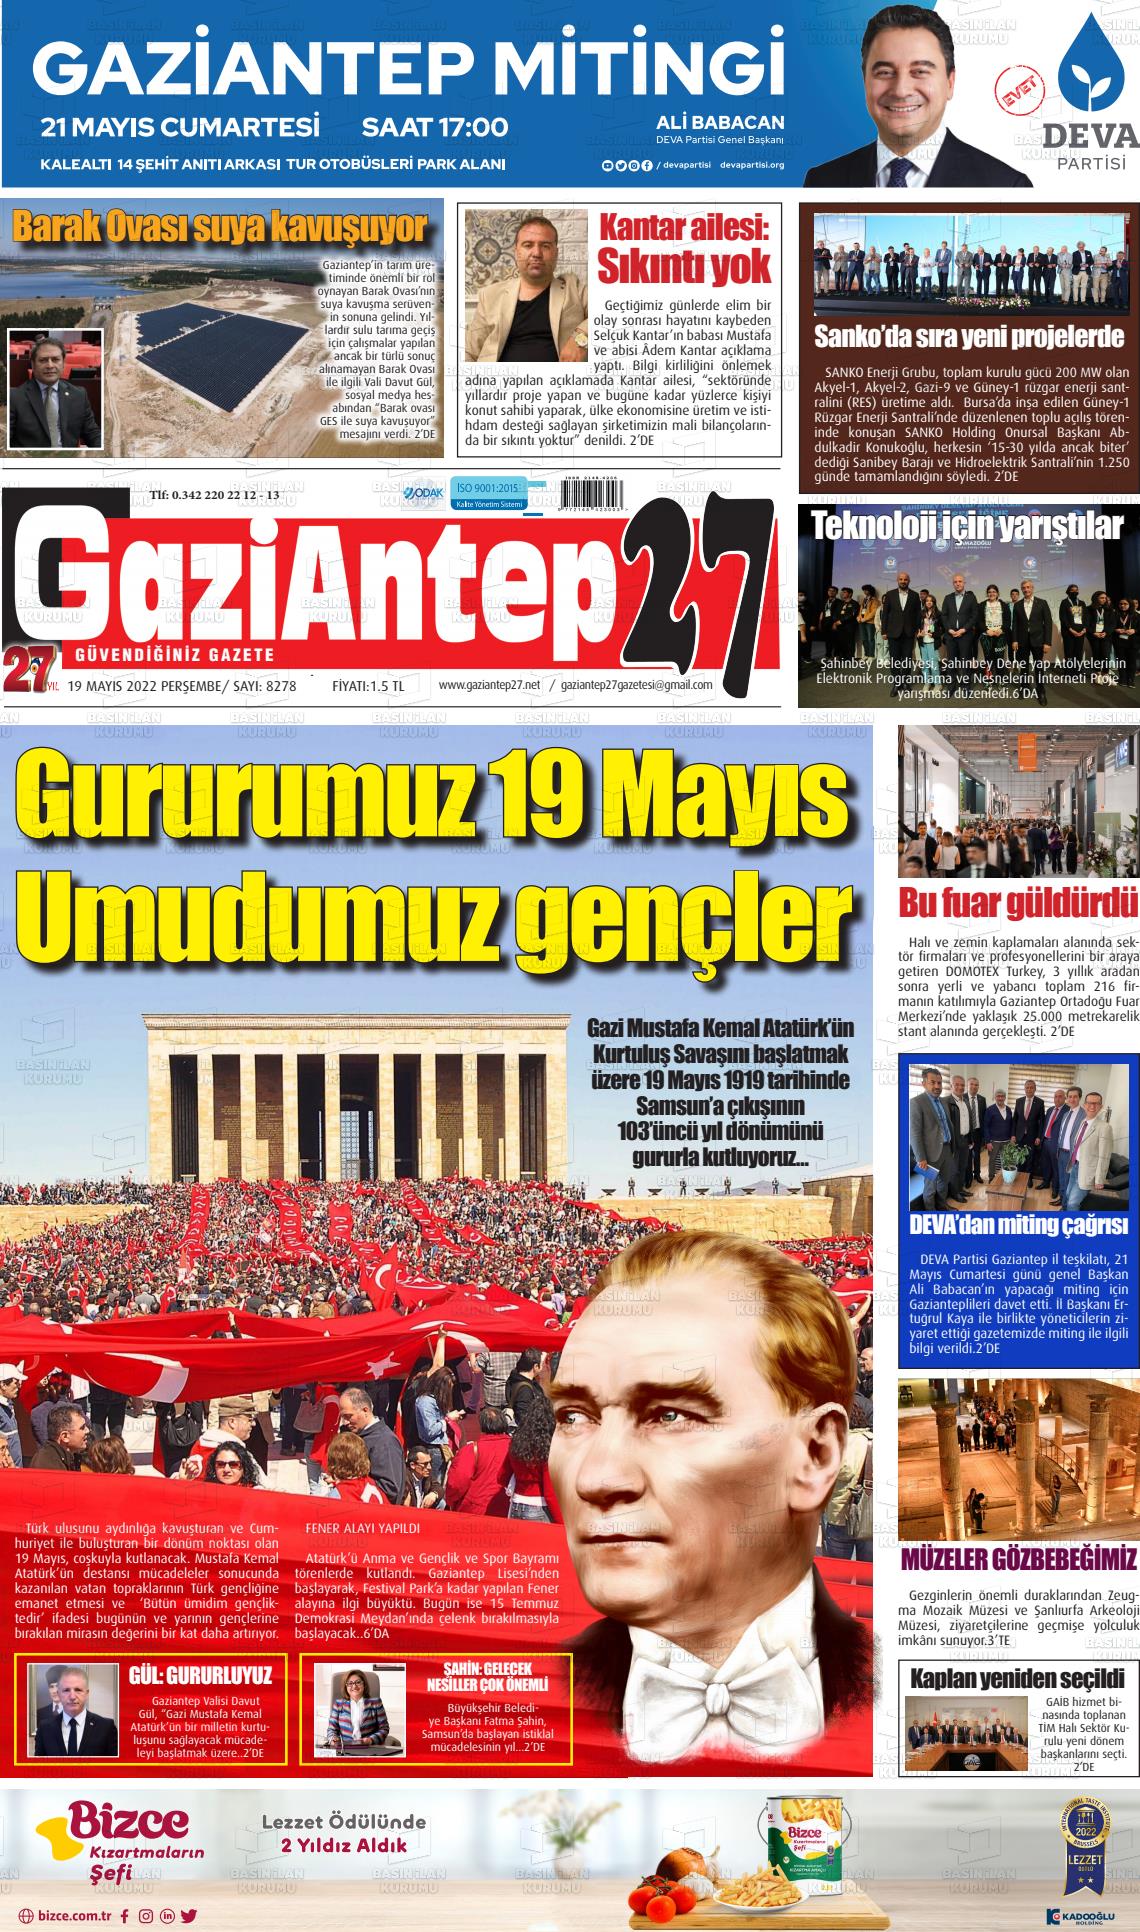 19 Mayıs 2022 Gaziantep 27 Gazete Manşeti